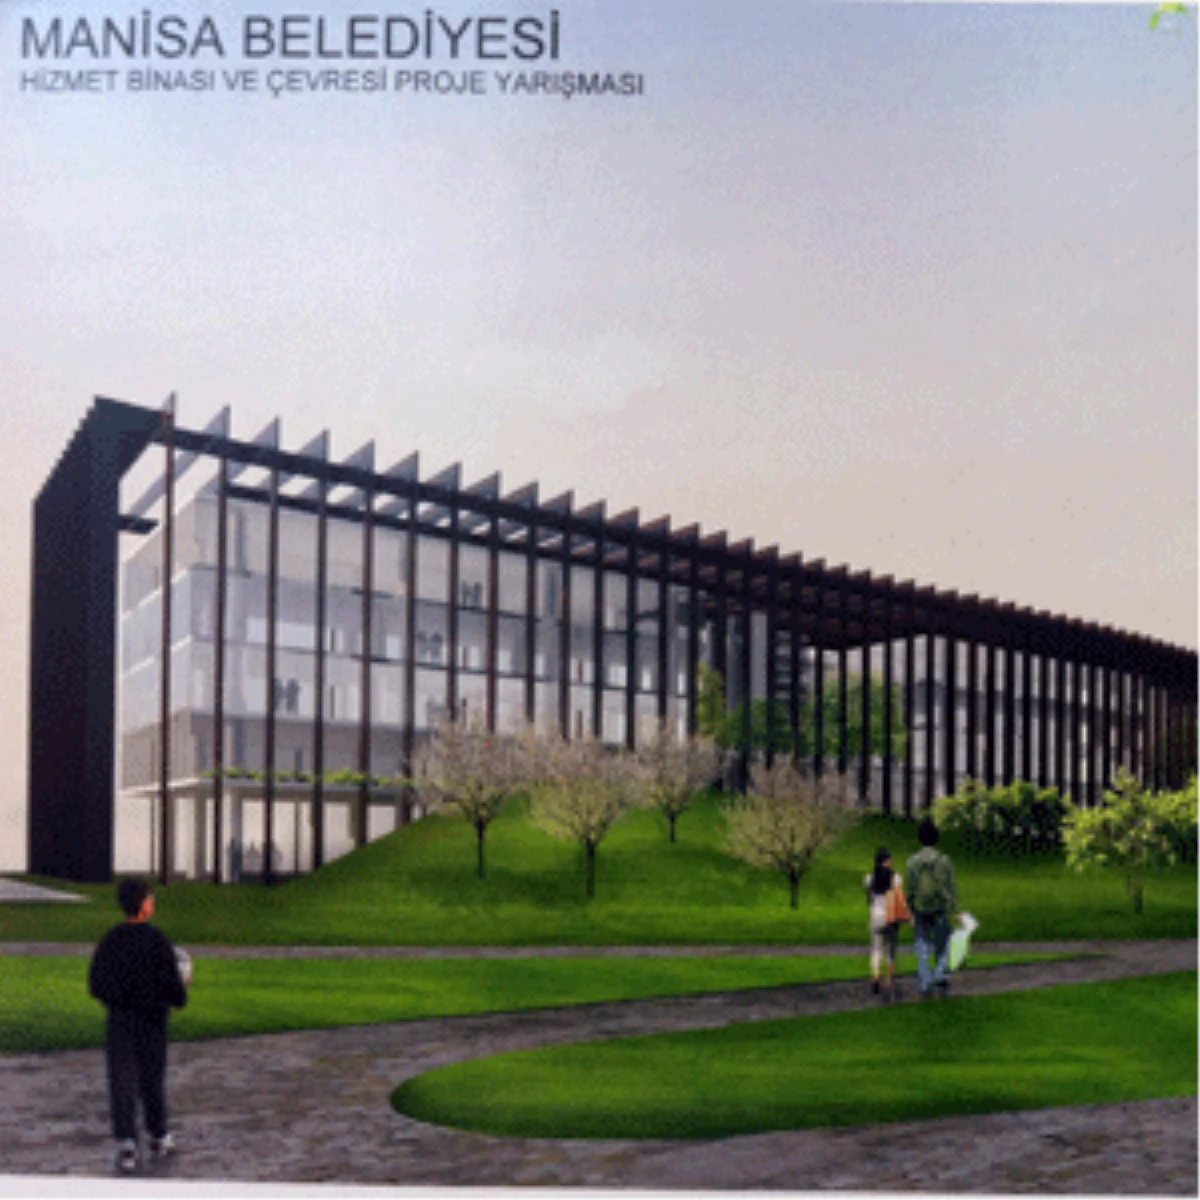 Manisa Belediyesi Hizmet Binası ve Çevresi Ulusal Mimari Proje Yarışması Sonuçlandı